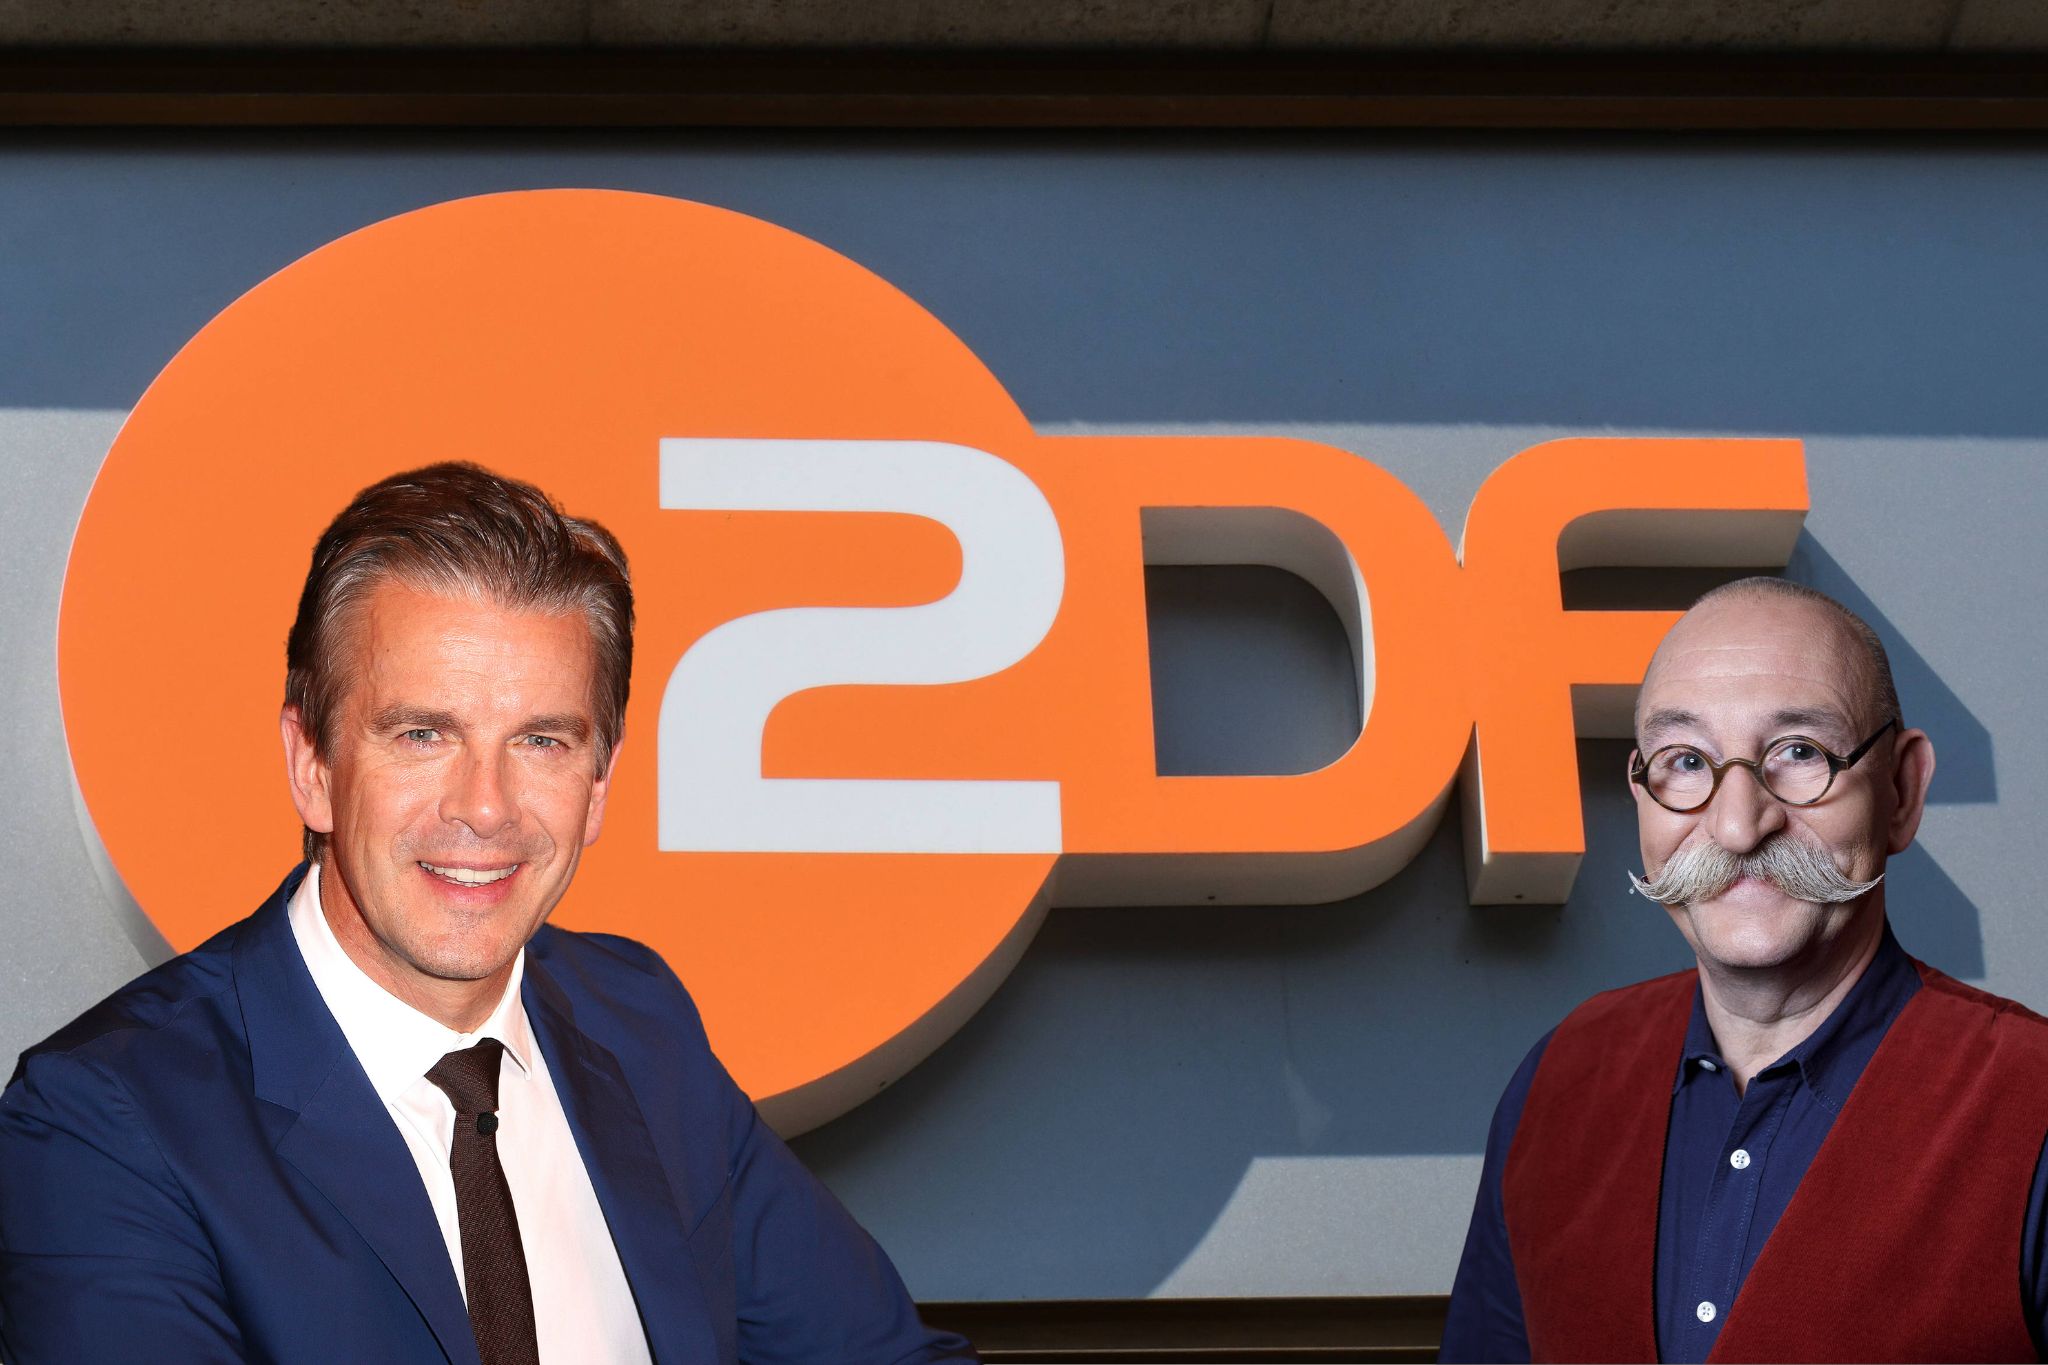 Markus Lanz & Co : Voici les salaires des stars de ZDF